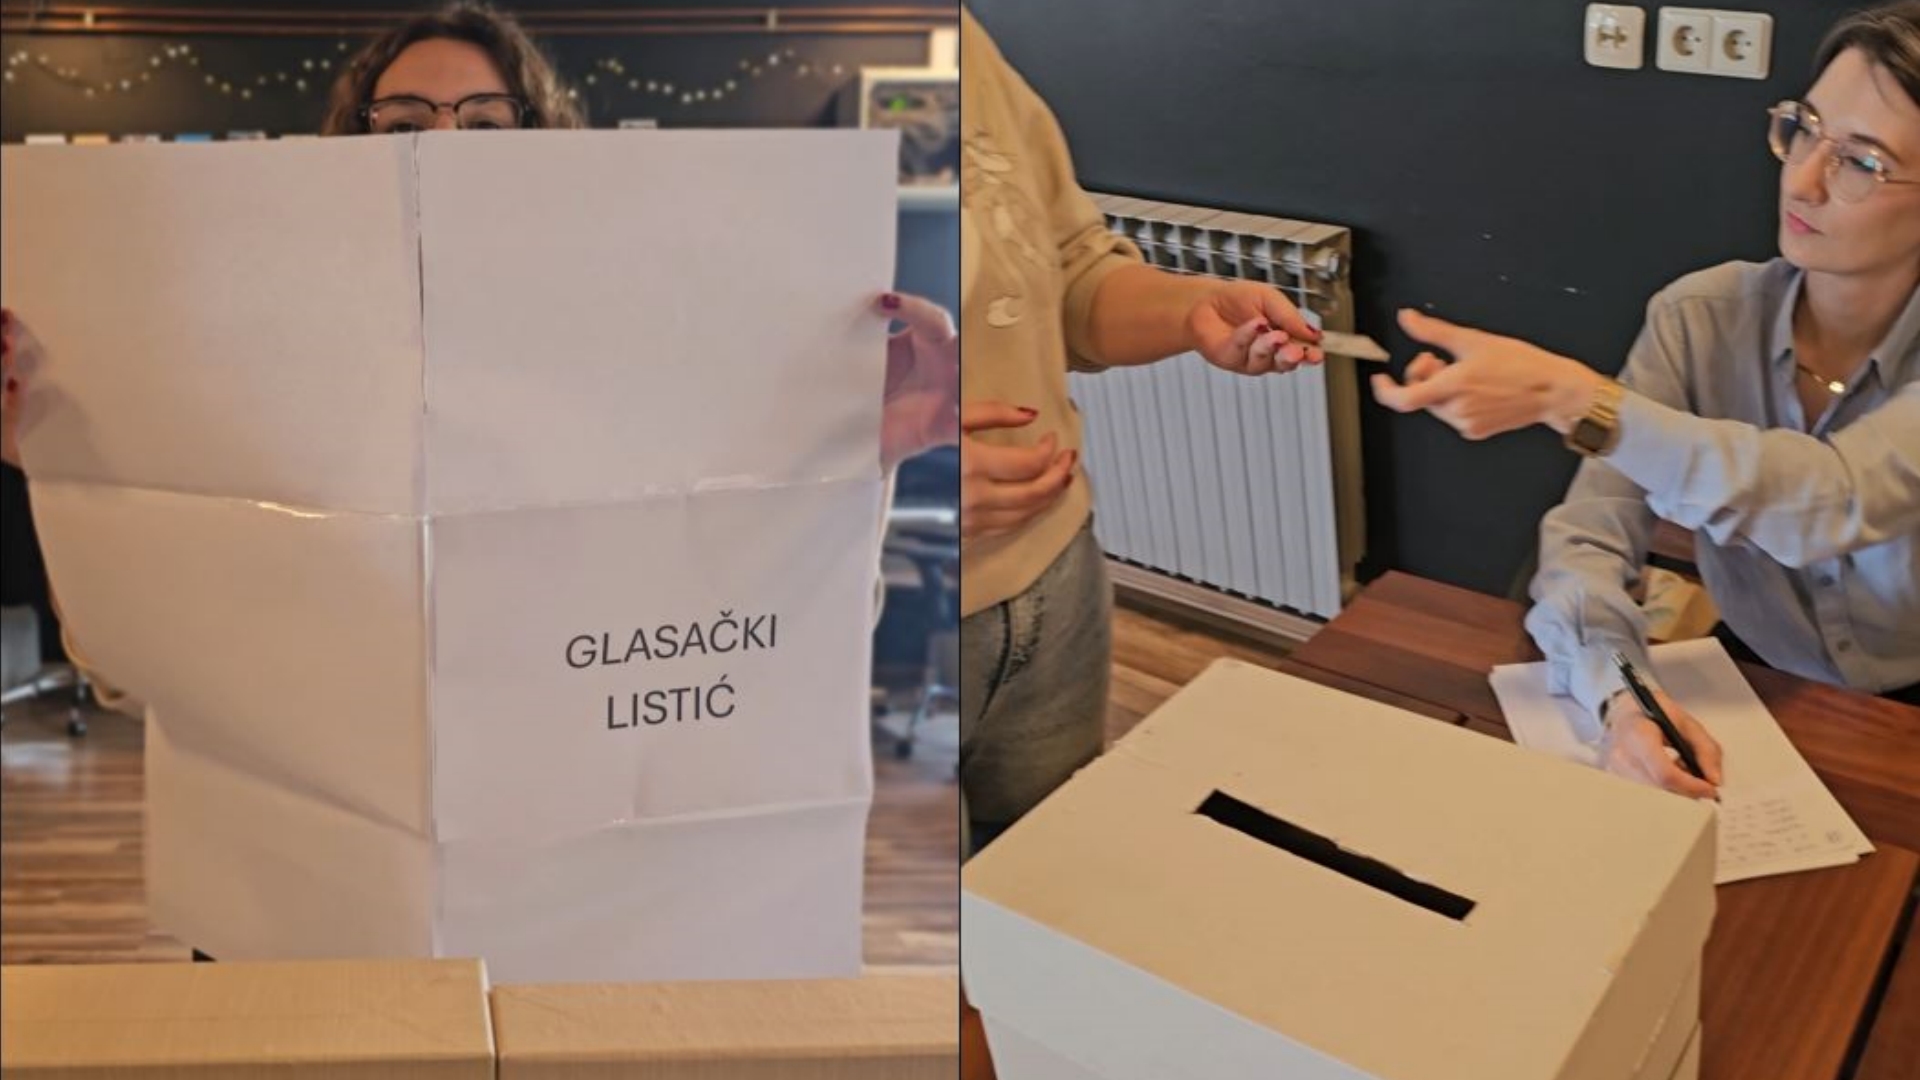 prva slika lijevo ogromni glasački listić, durga slika desno glasačka kutija